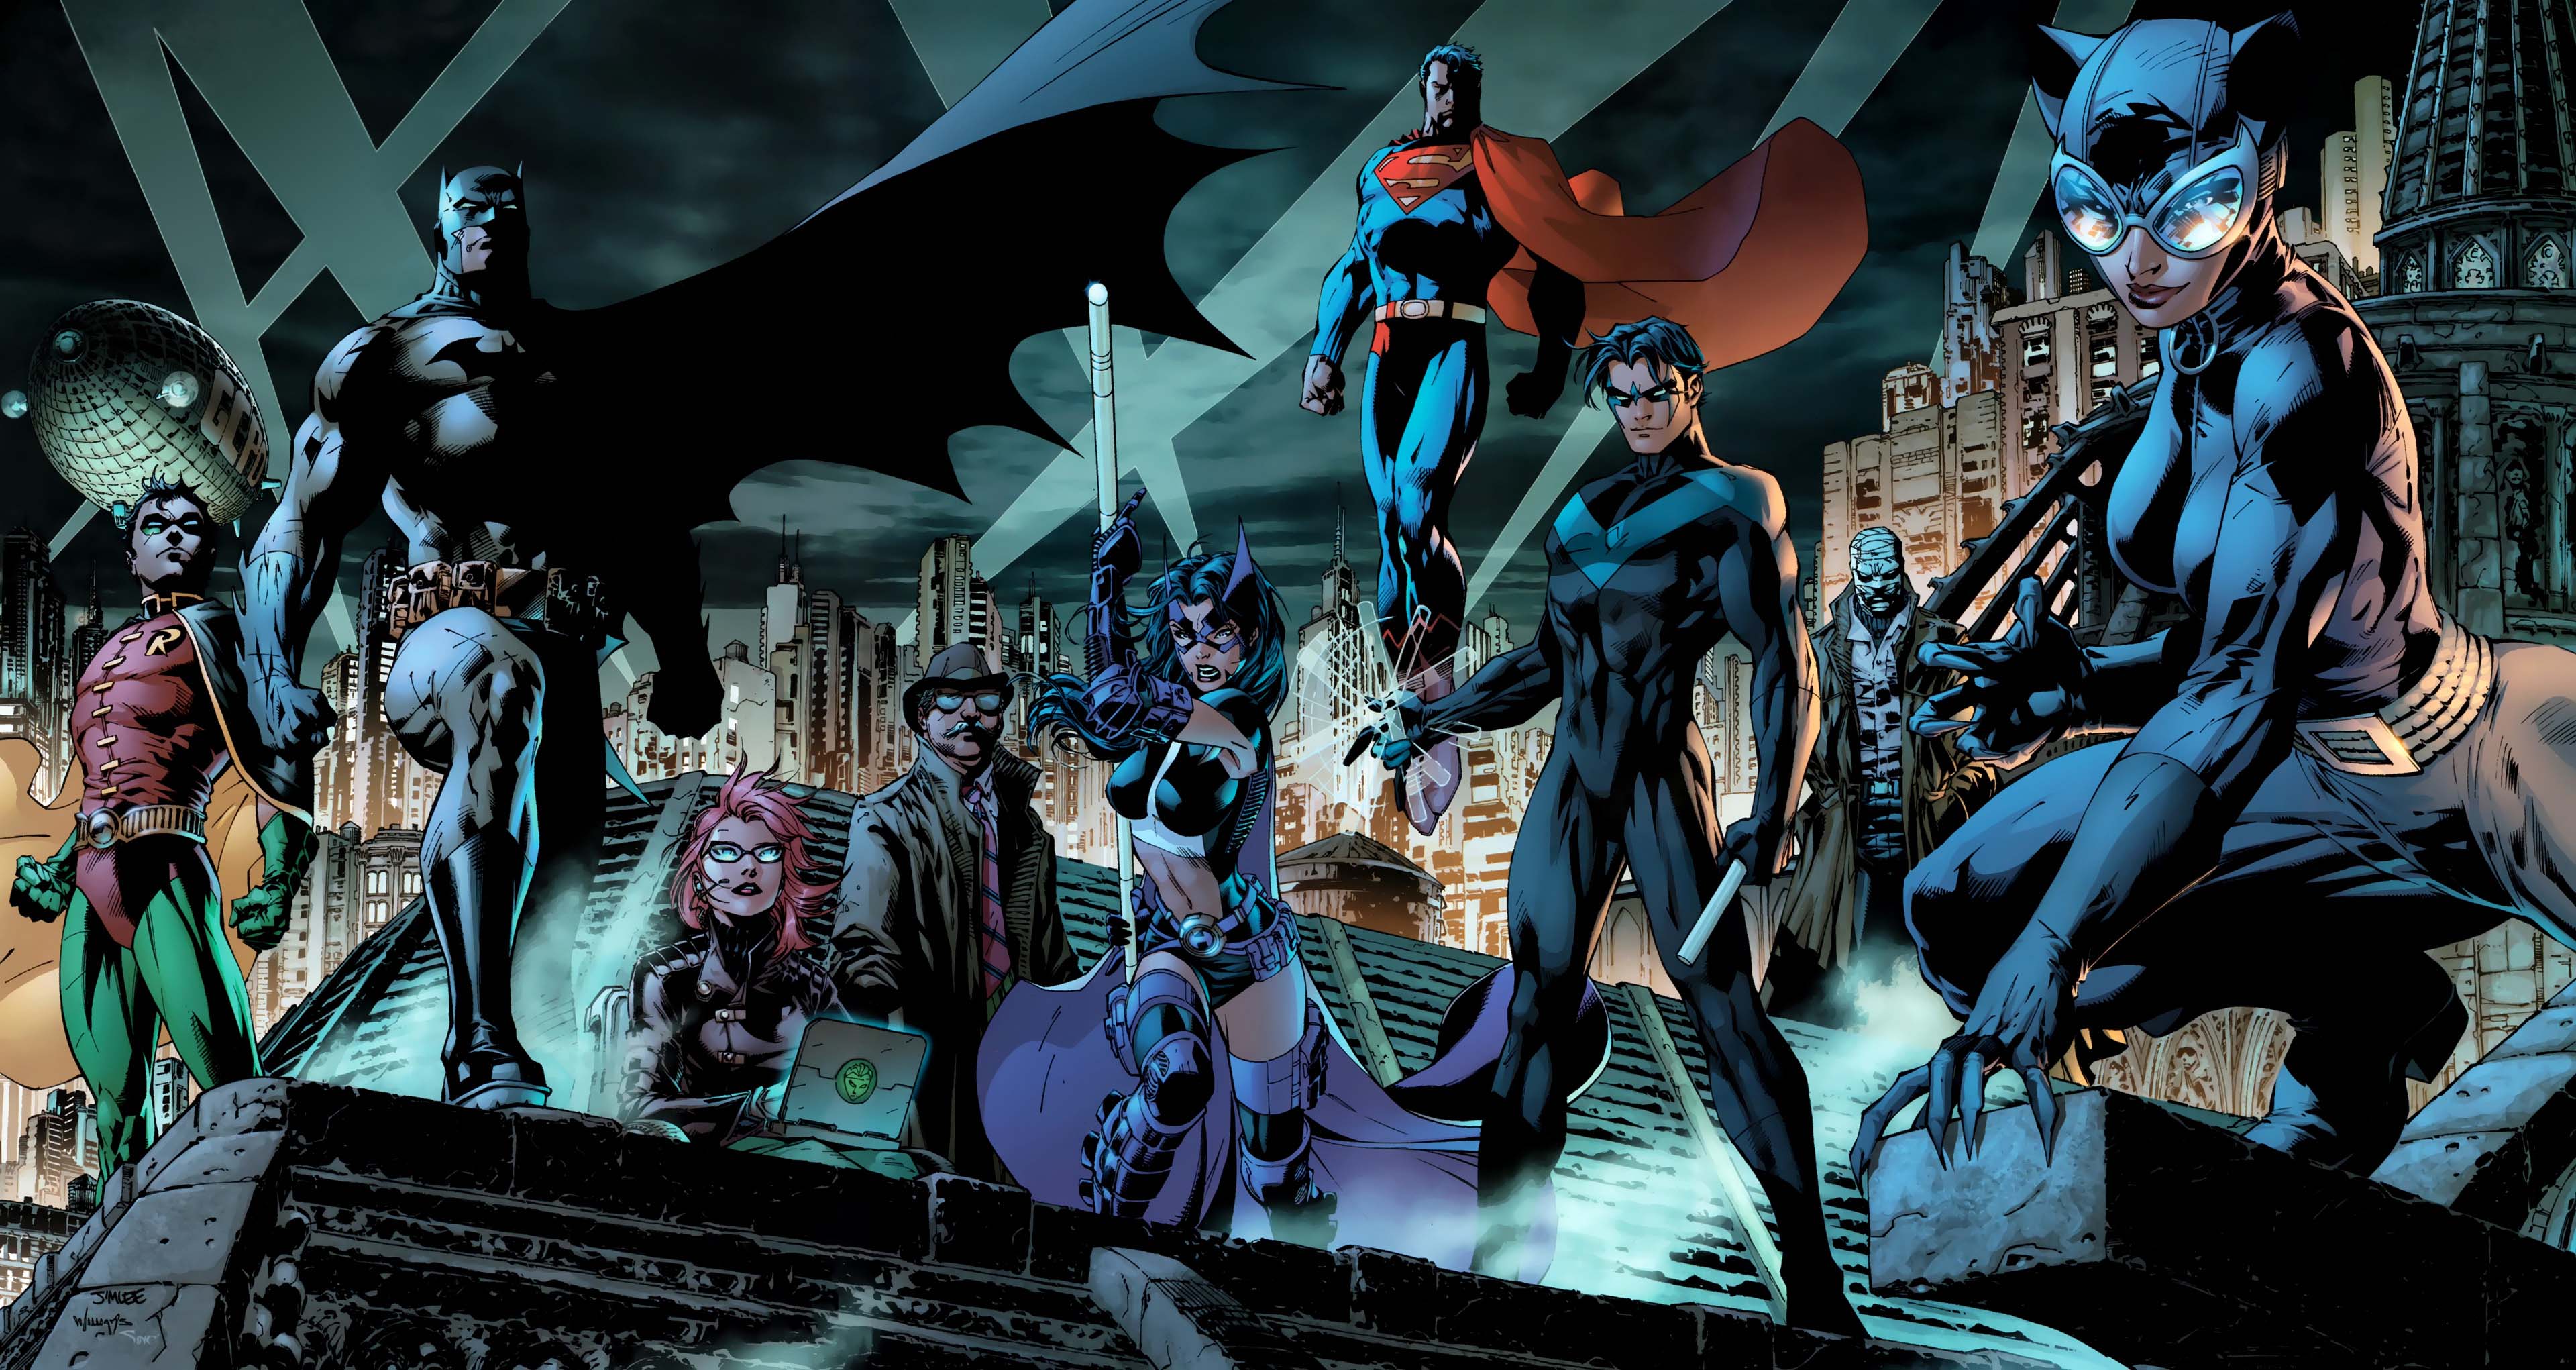 Wallpaper ID 50077  batman superheroes hd dc comics artwork free  download